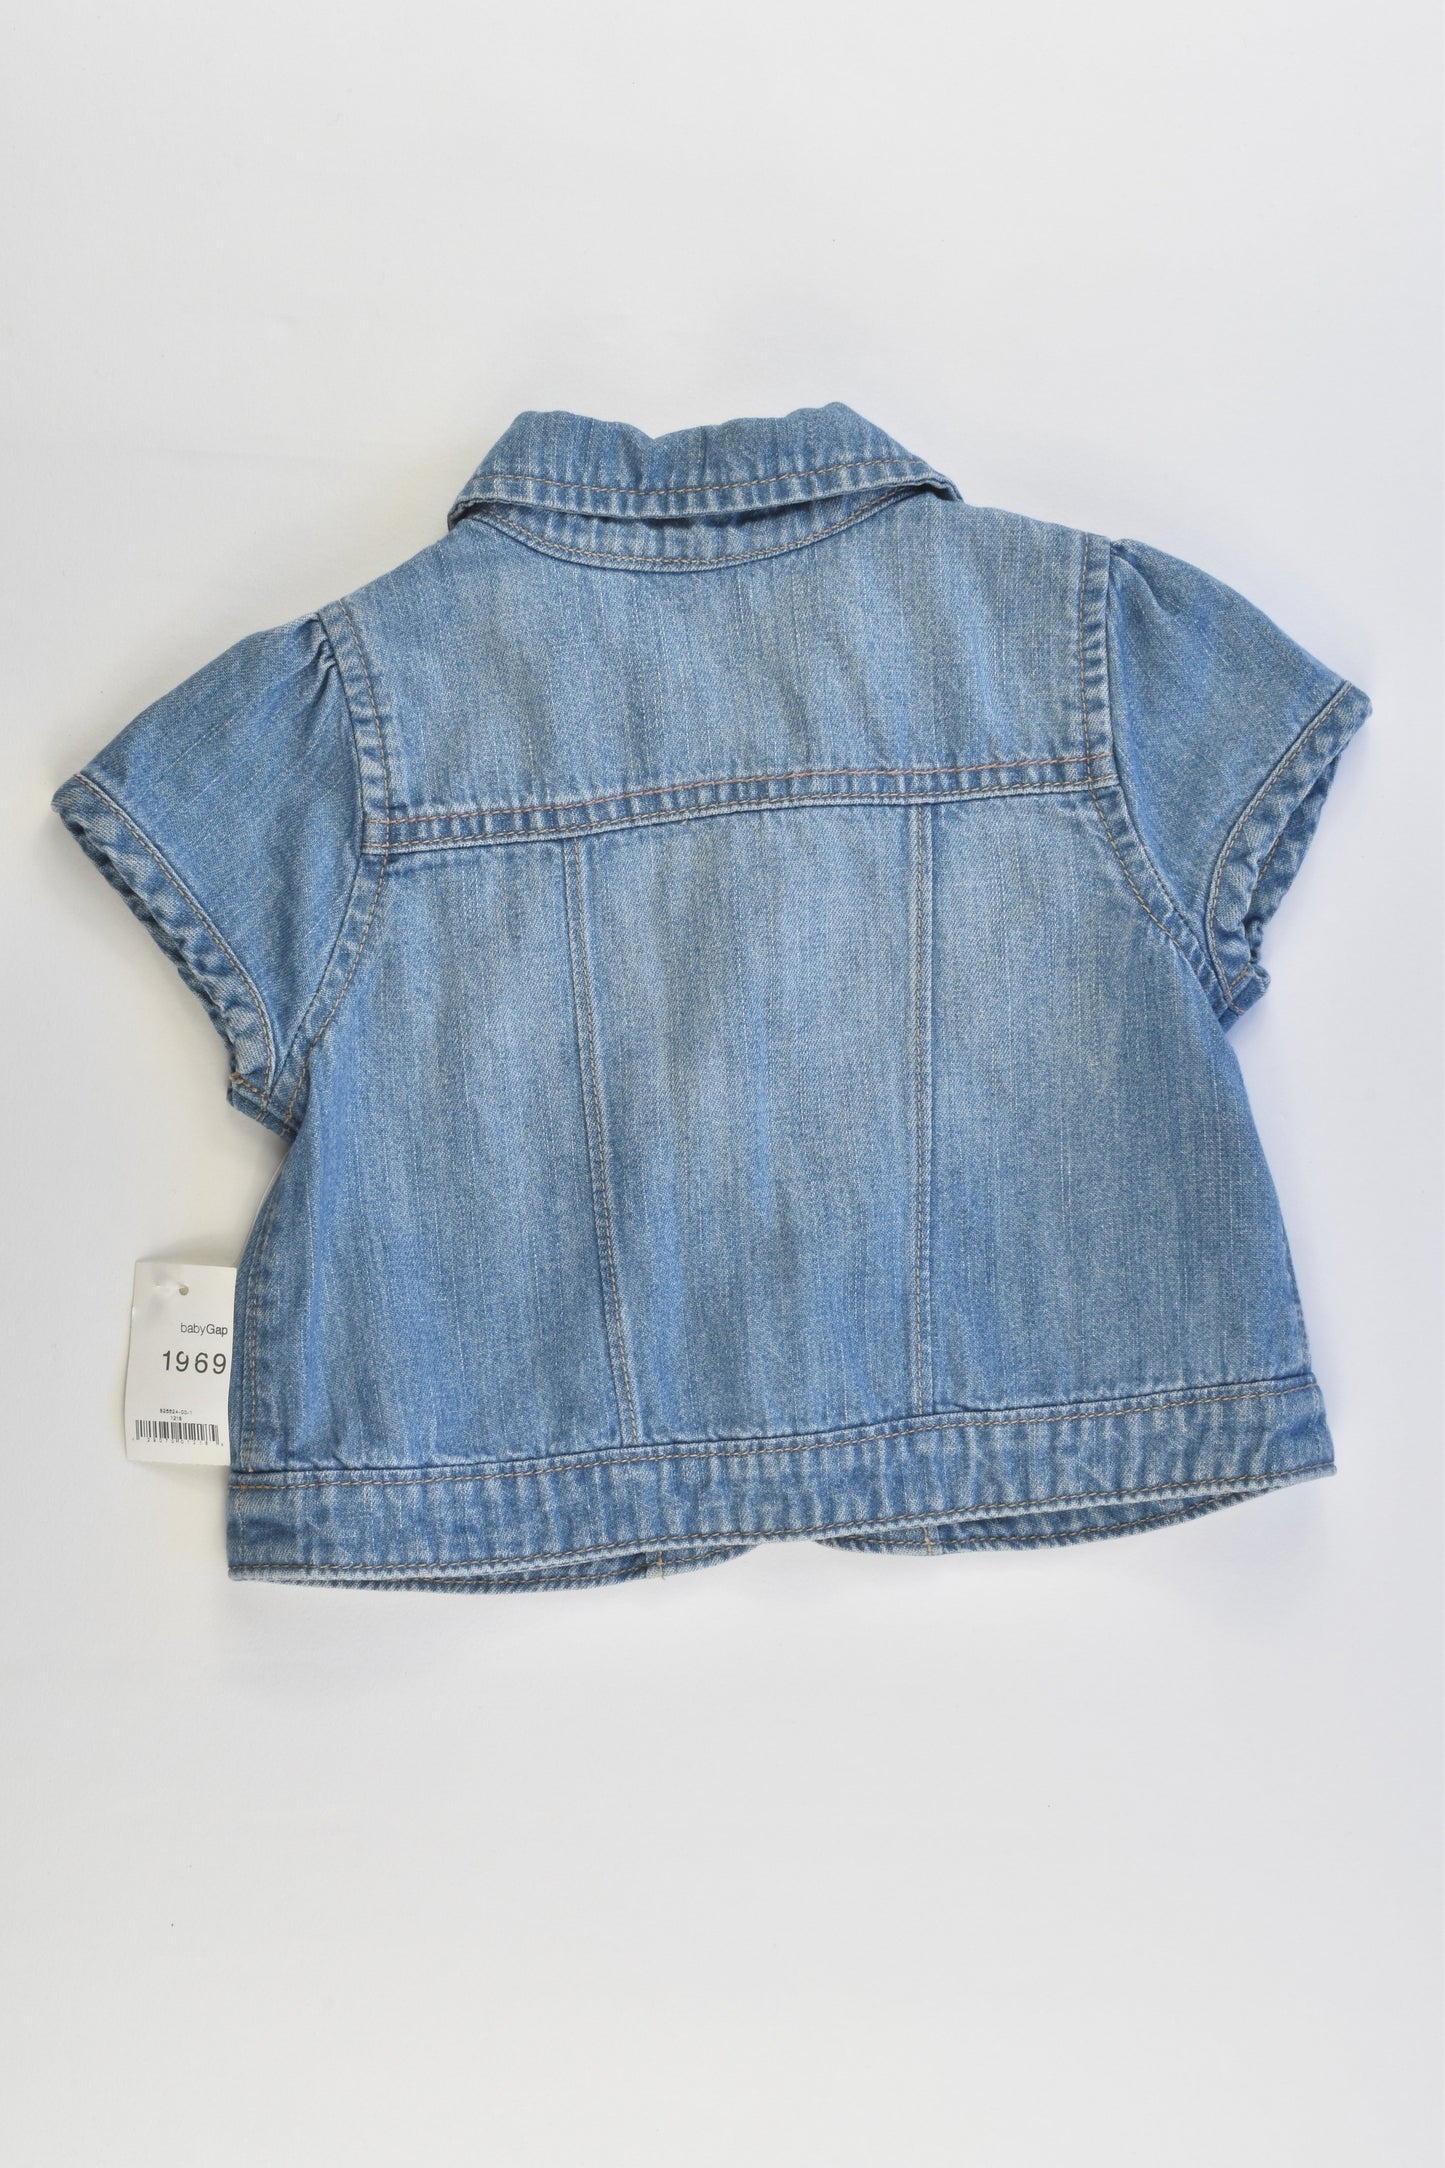 NEW Baby Gap Size 1 (12-18 months) Denim Jacket